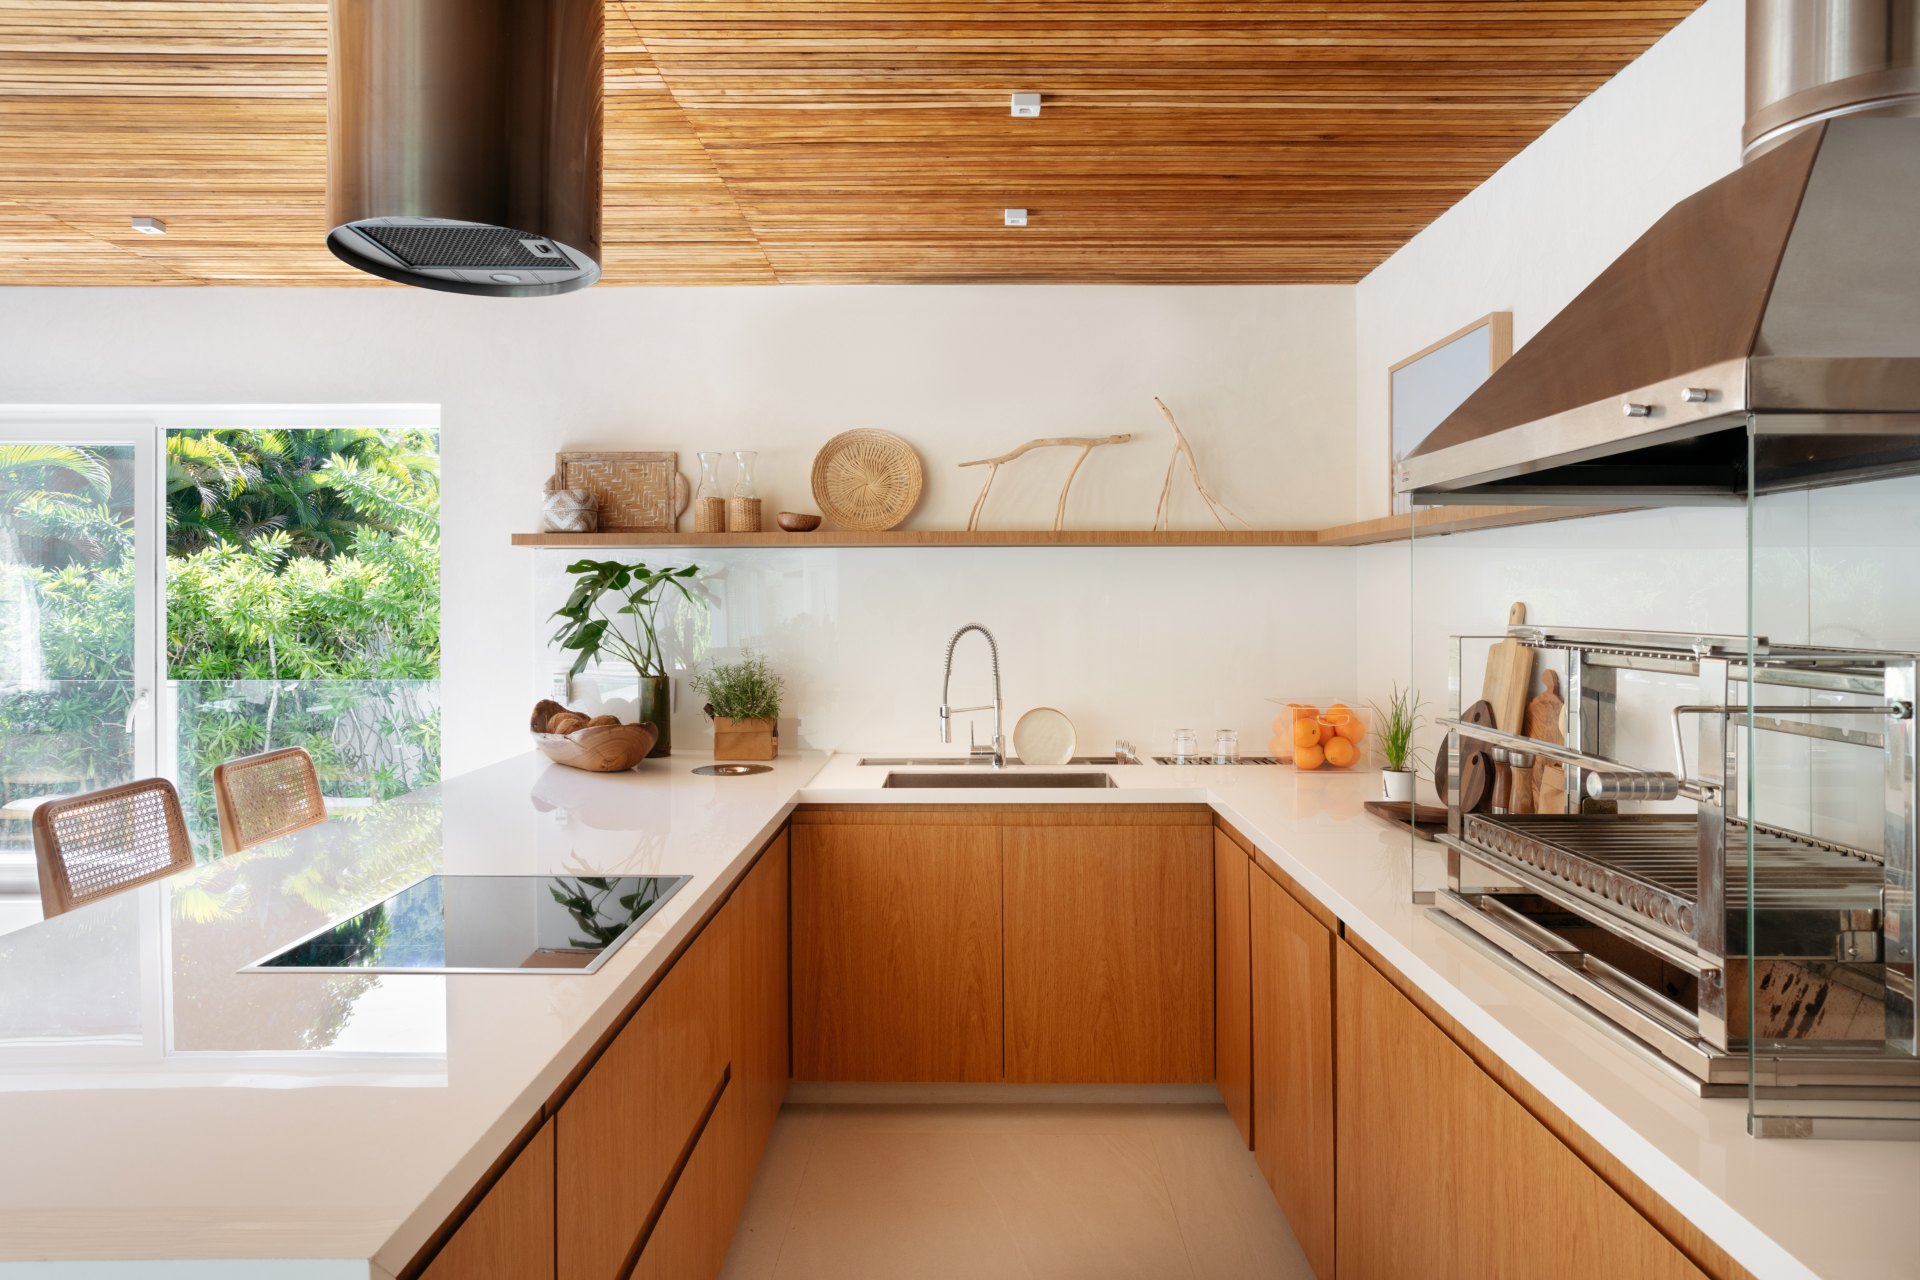 Décor do dia: cozinha minimalista tem teto preto e marcenaria de